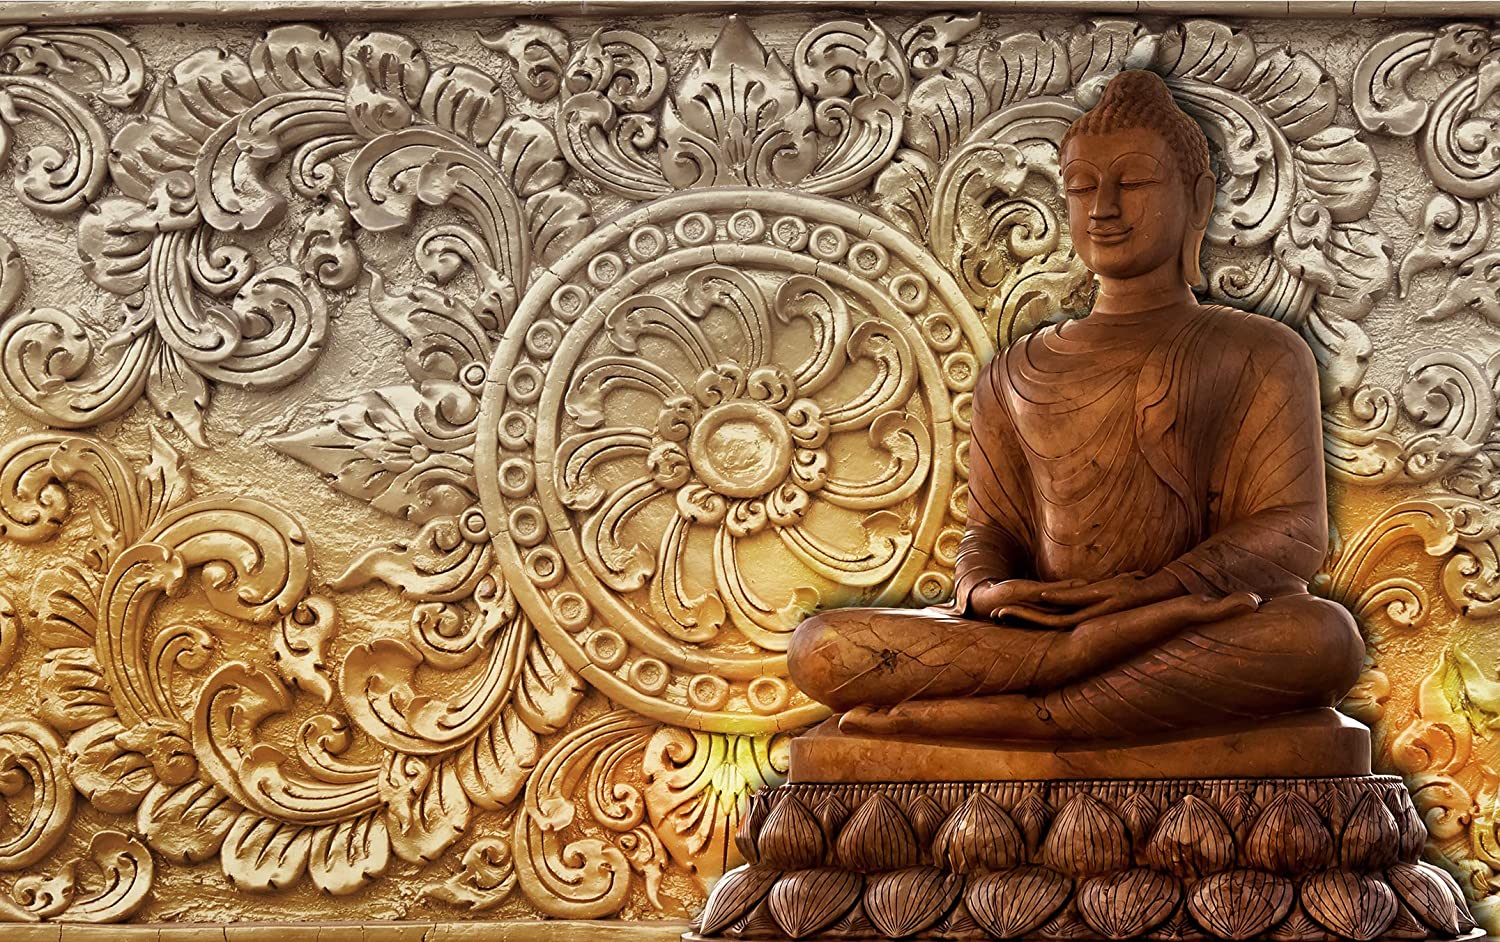 Bức ảnh phật giáo là một trong những tác phẩm nghệ thuật rất phổ biến trong văn hóa Phật giáo. Hãy thưởng thức những bức tranh phật giáo để khám phá thêm về cuộc sống và tìm thiện cảm hơn cho những người xung quanh.